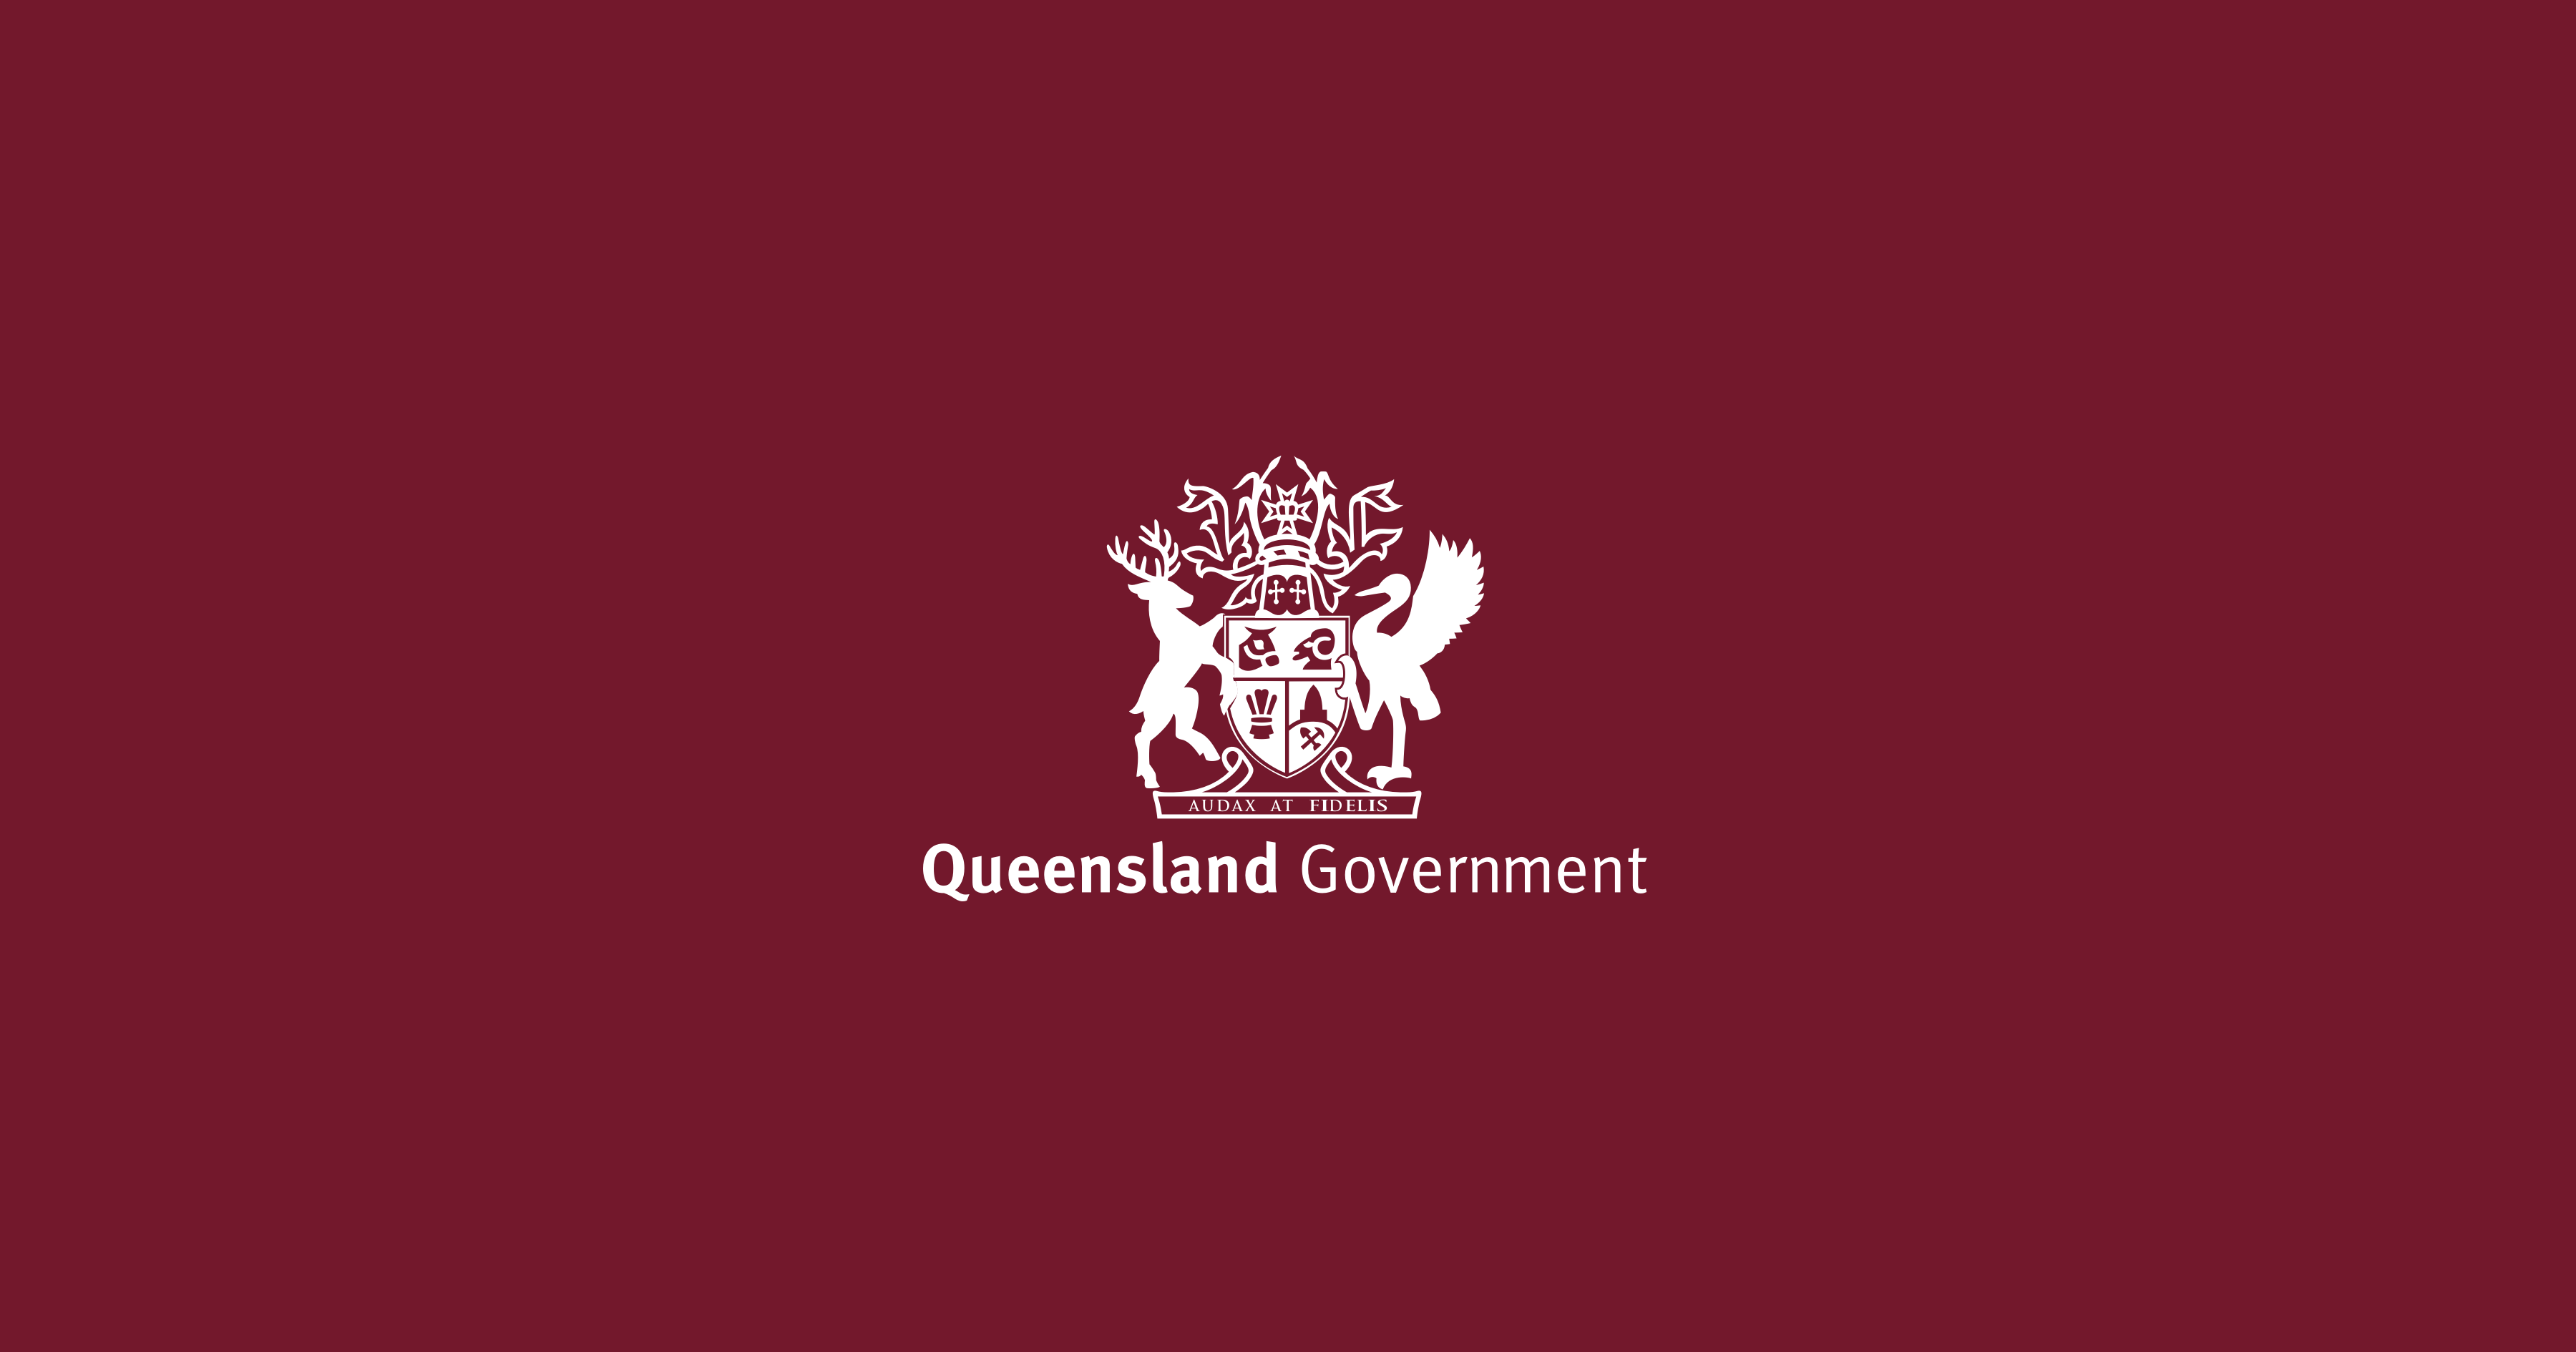 www.forgov.qld.gov.au